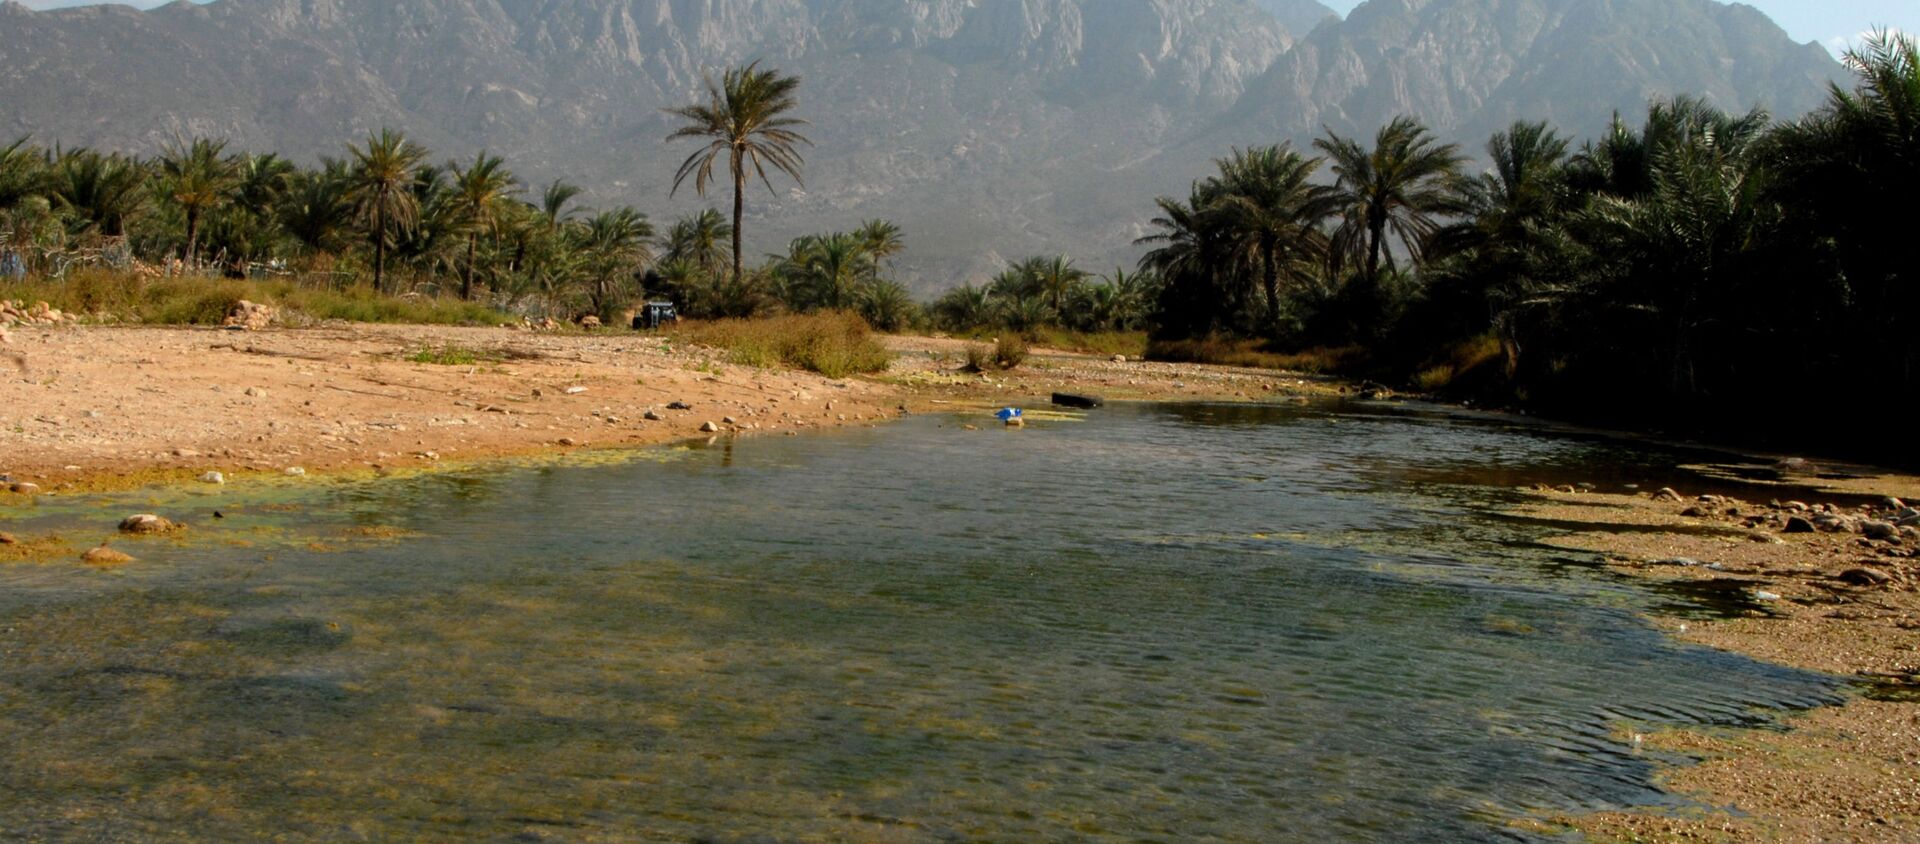 جزيرة سقطرى، اليمن 2008 - سبوتنيك عربي, 1920, 01.08.2021